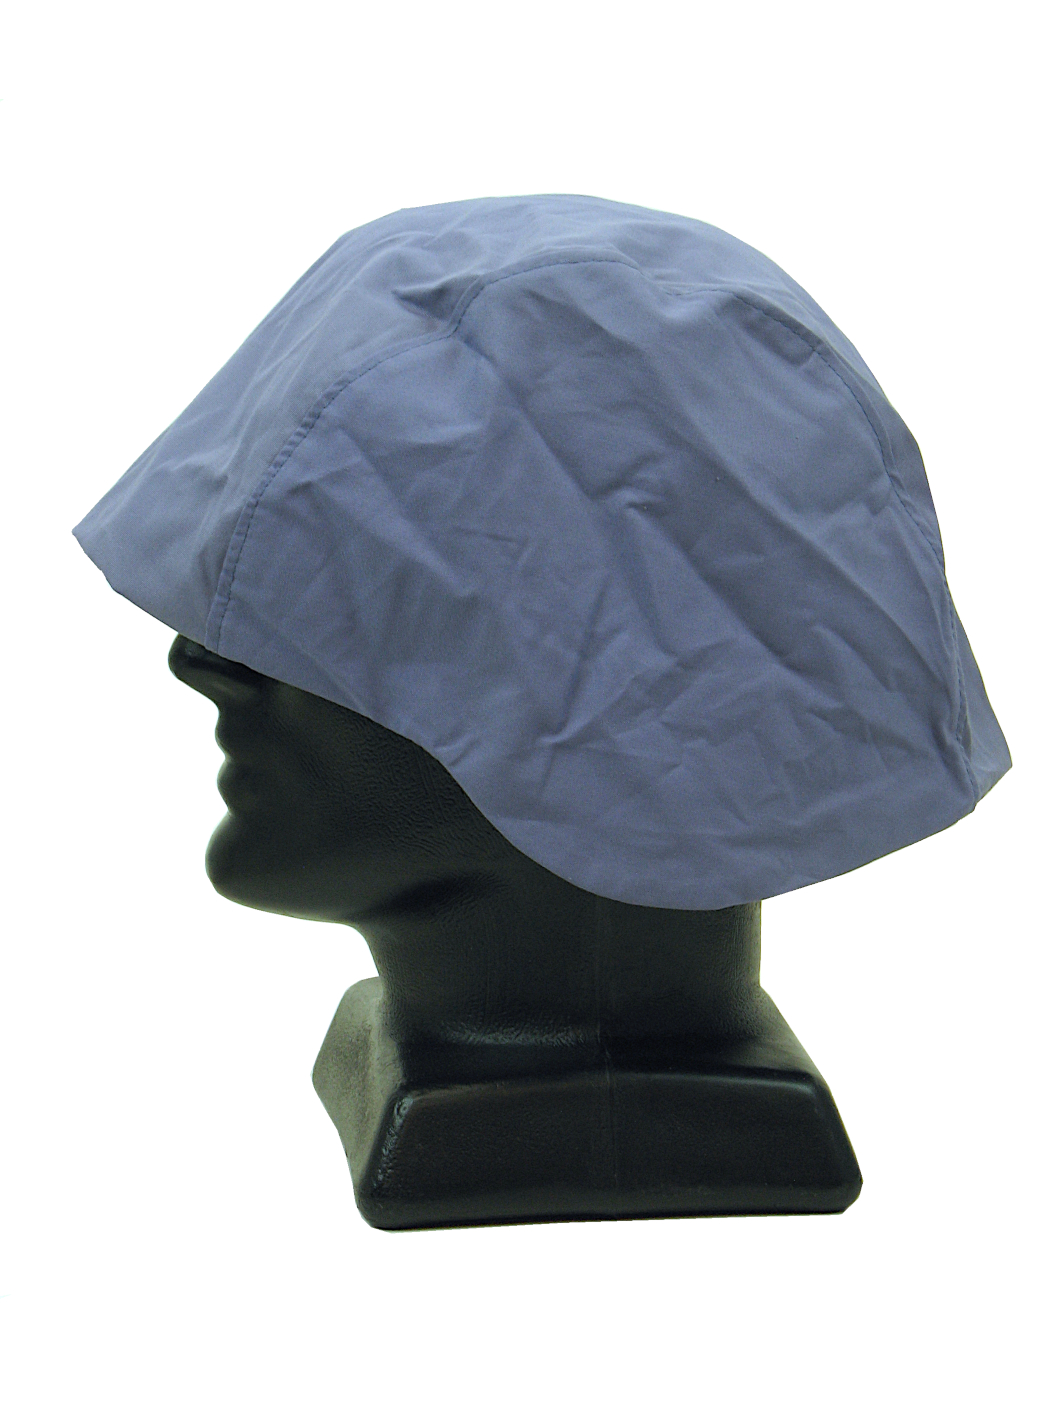 U.N. Blue Helmet Cover MSC08 | Comrades